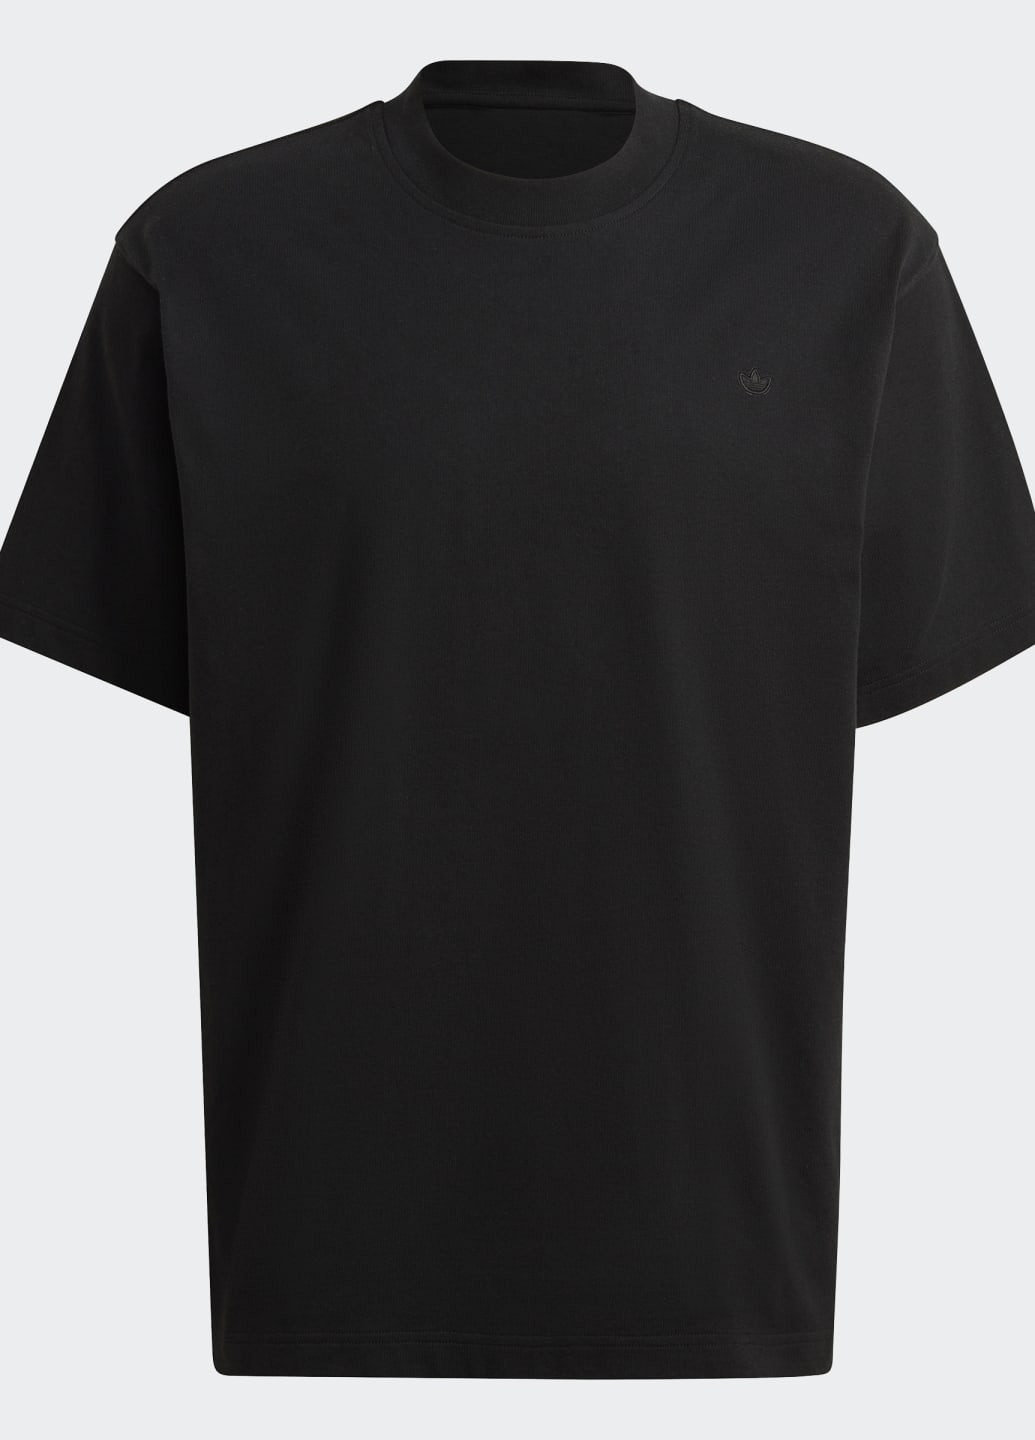 Черная футболка adicolor contempo adidas